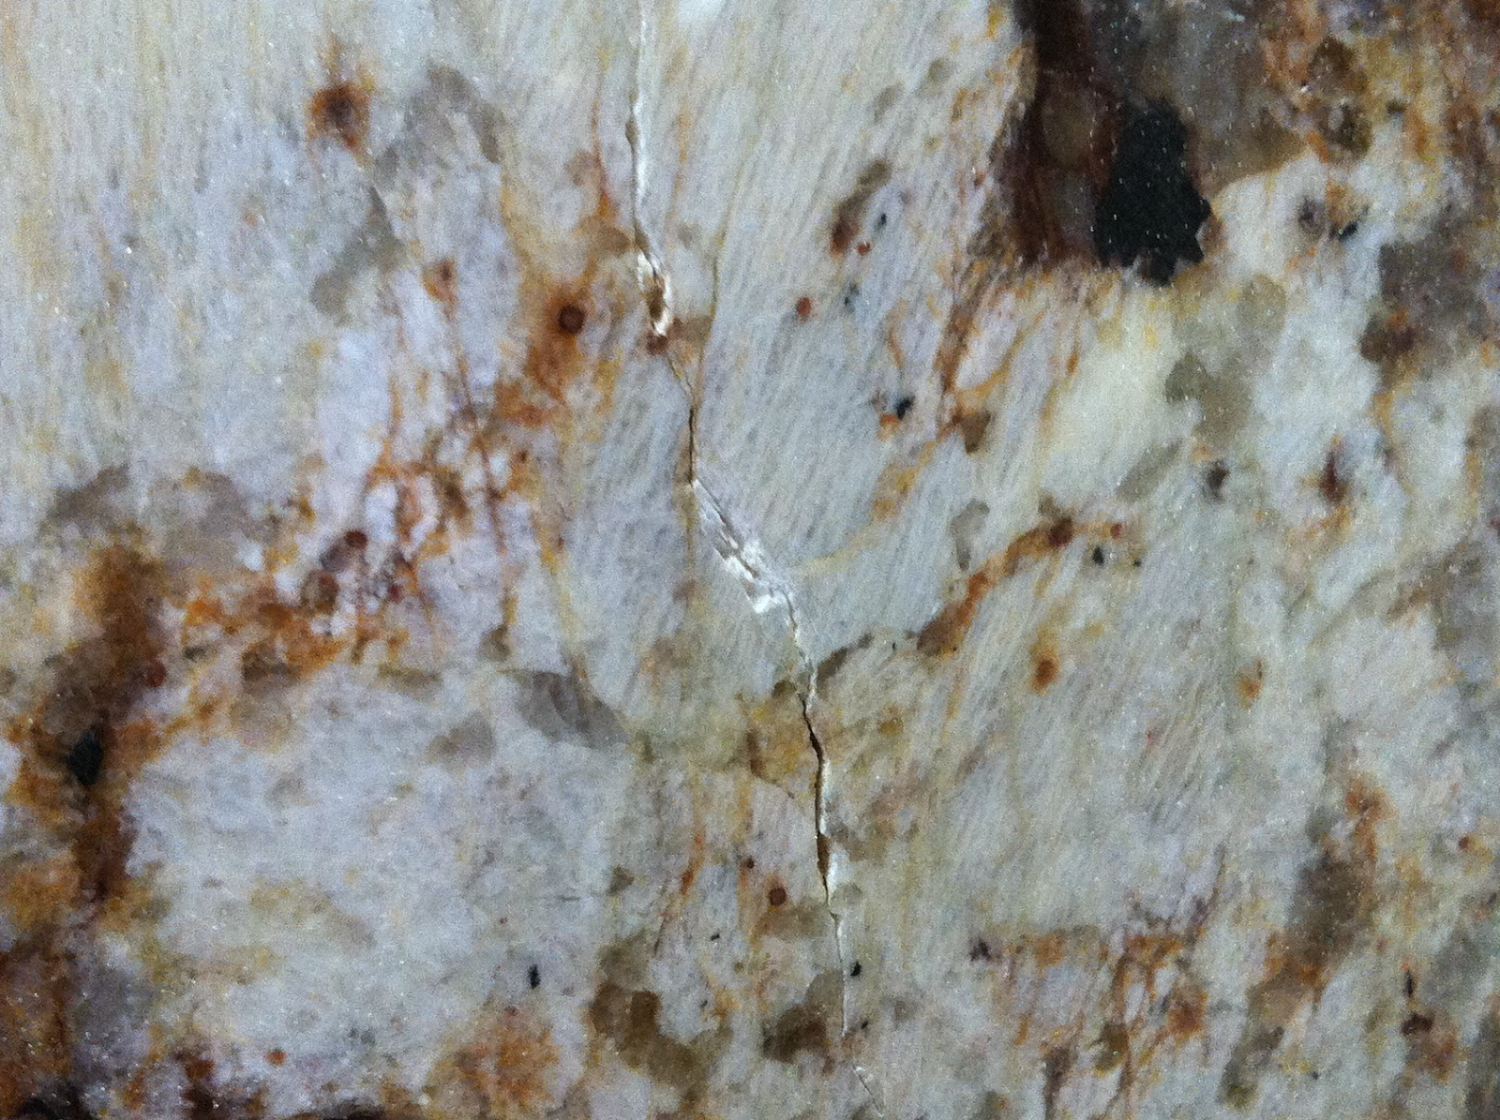 crack on granite countertop